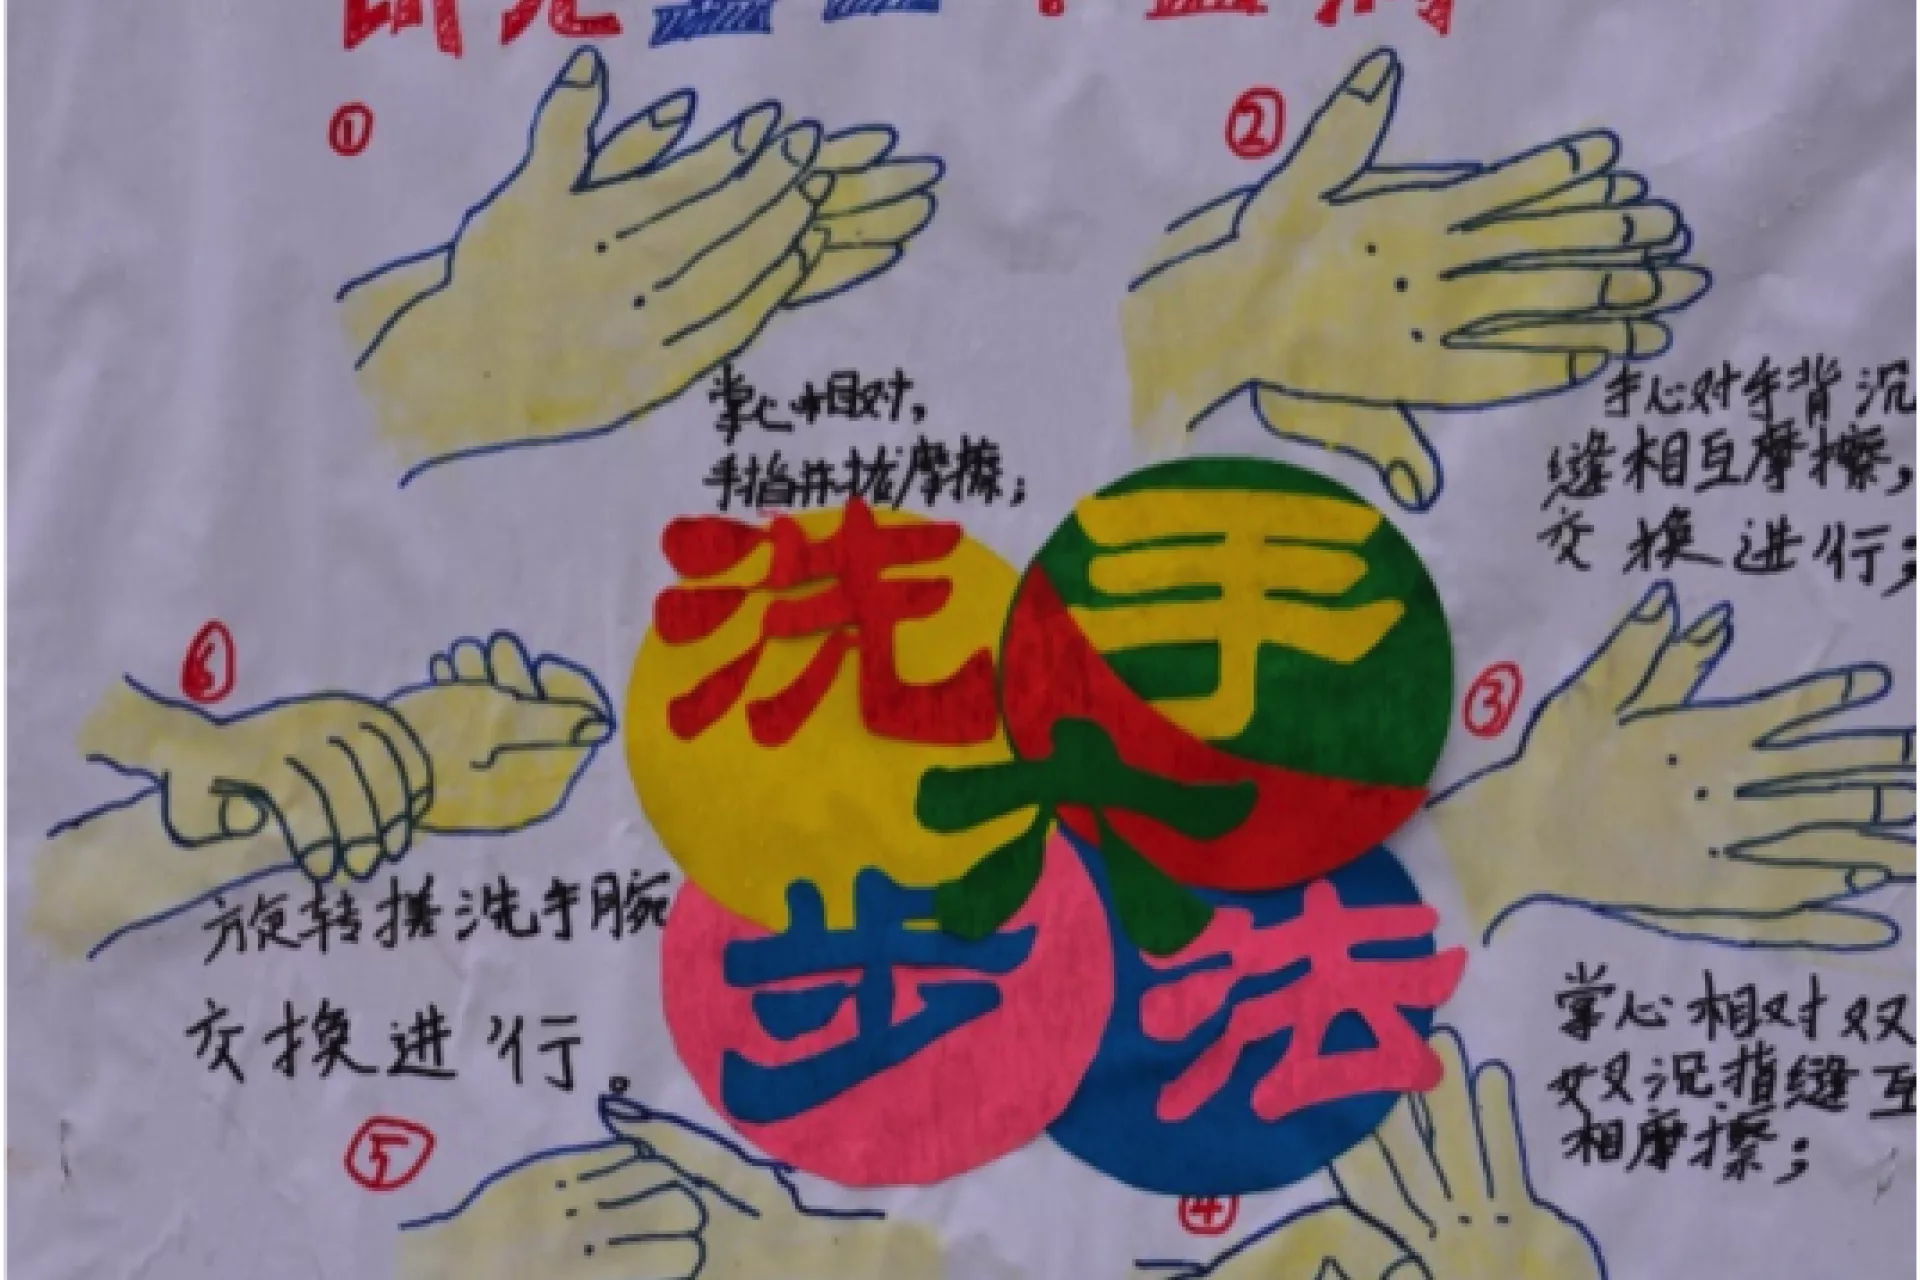 Six-step Handwashing Technique by a school childat Zhong County, Chongqing